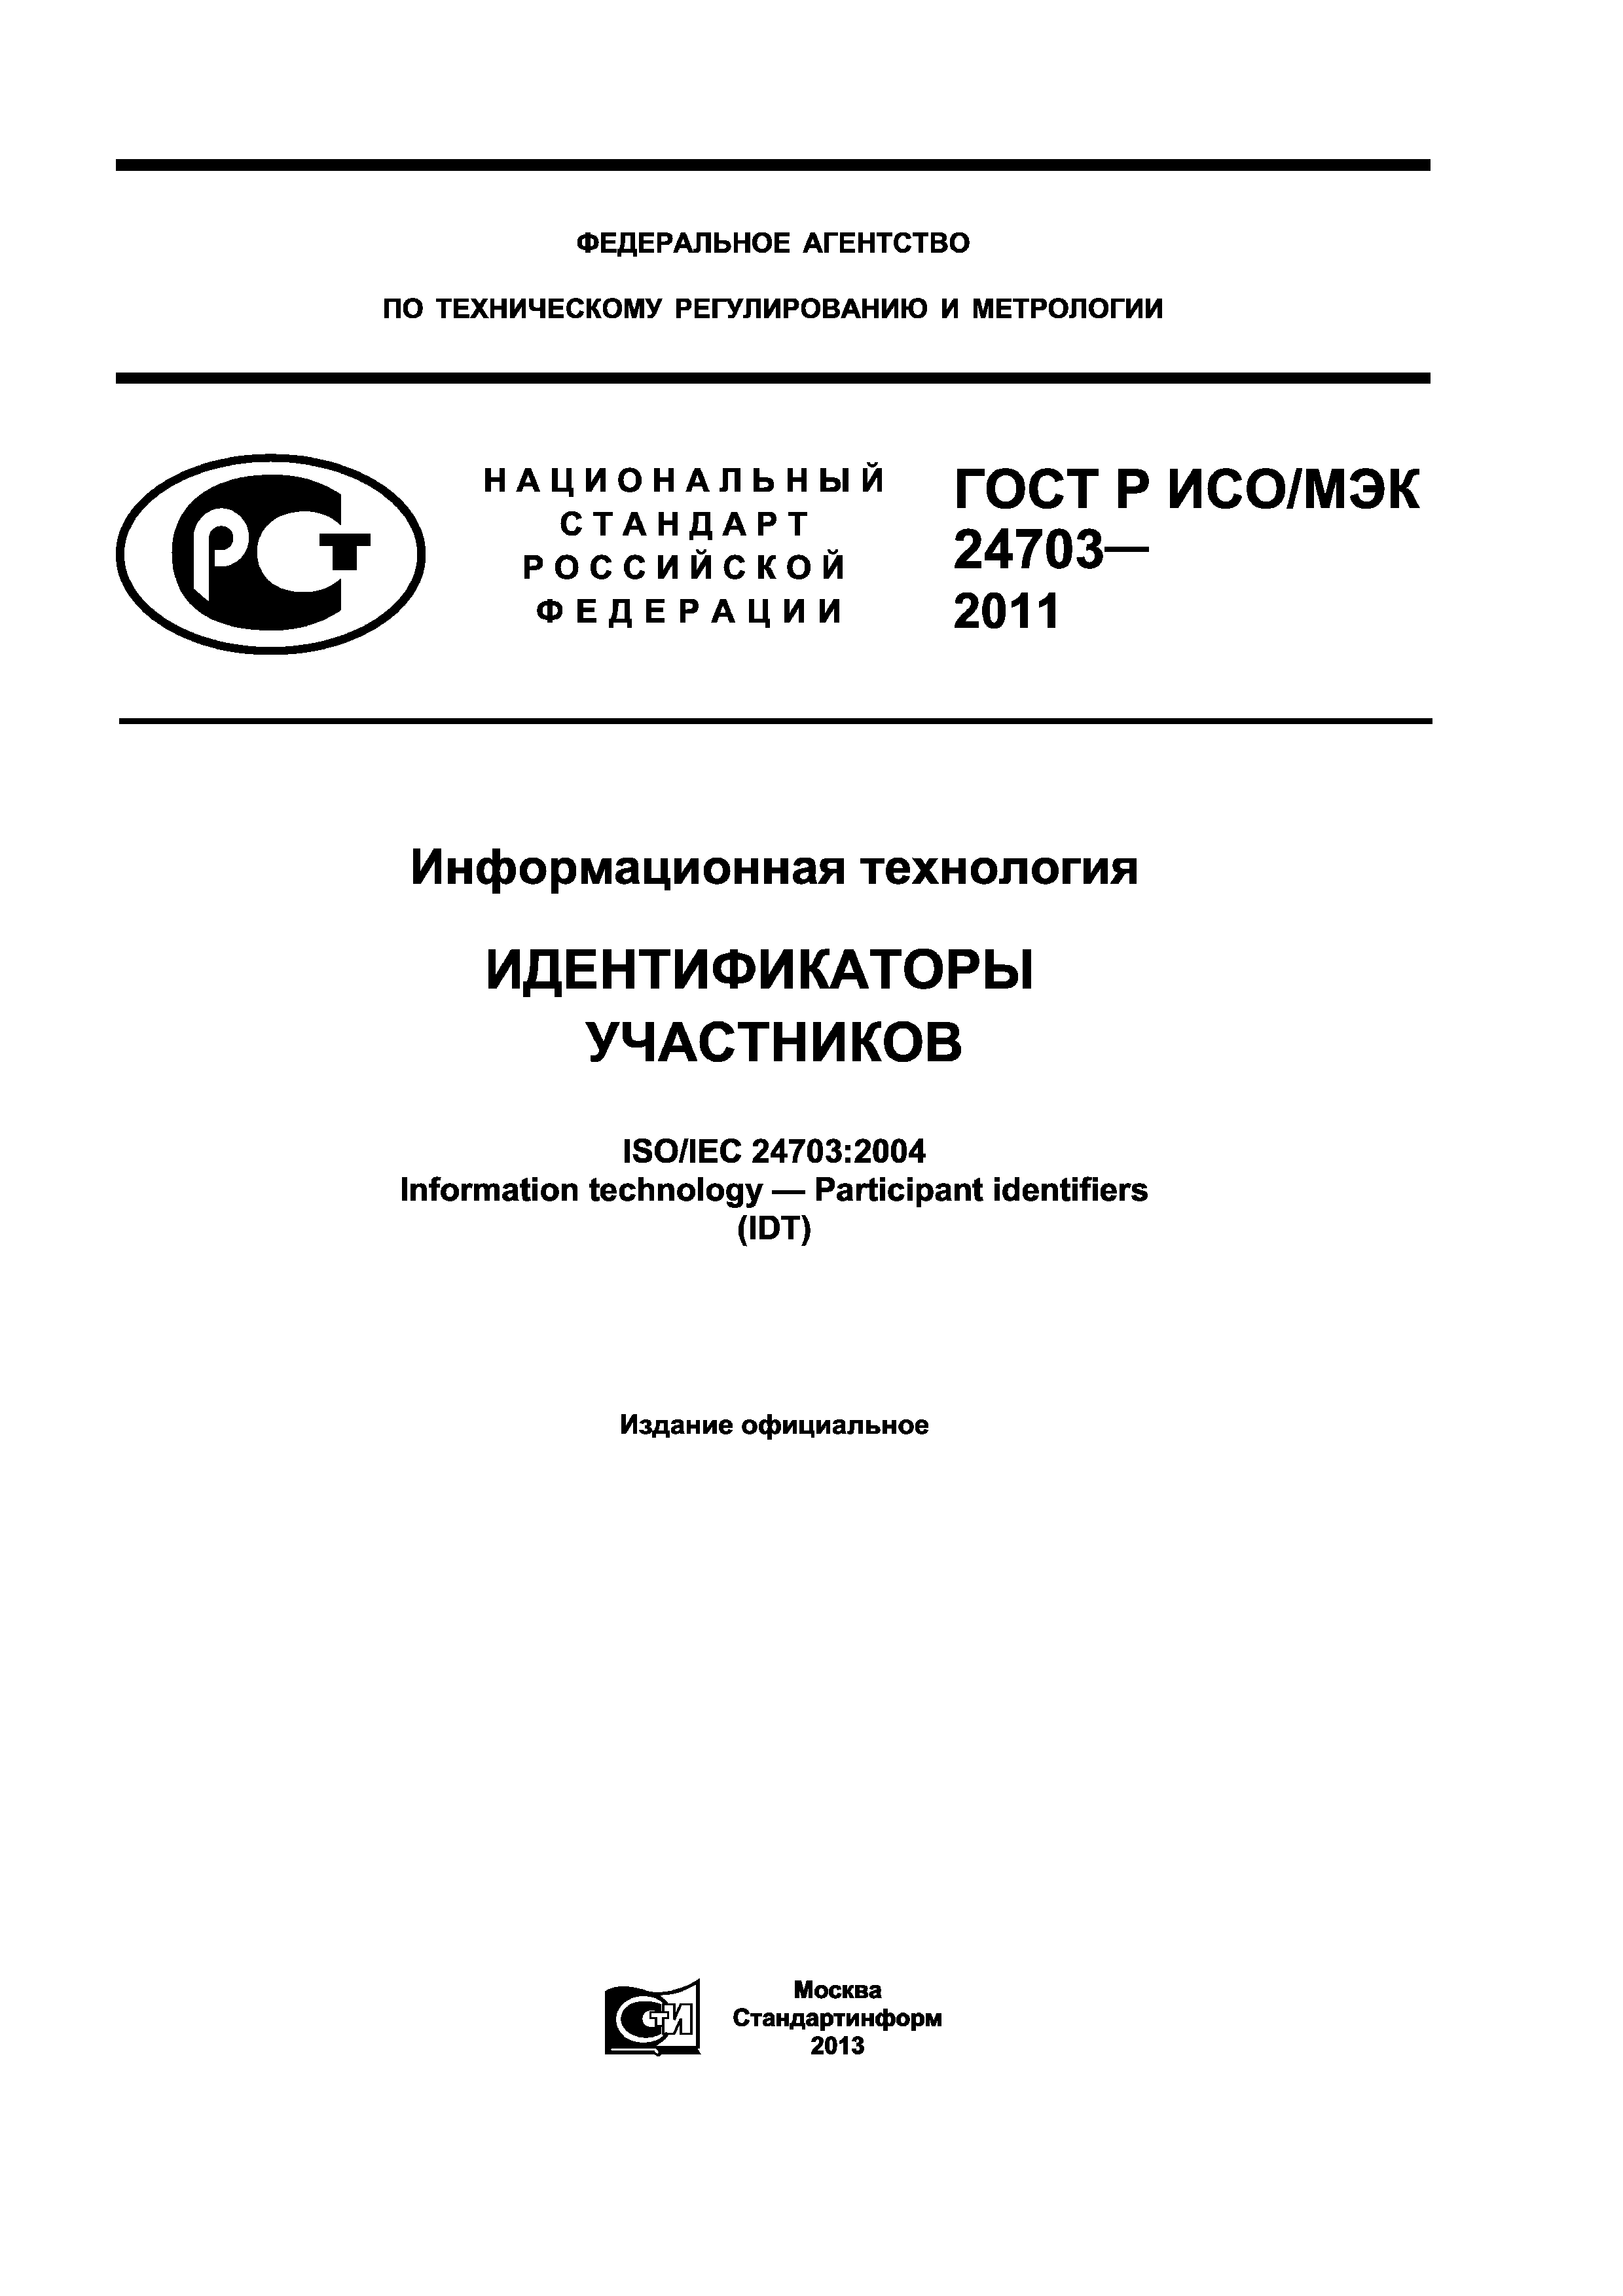 ГОСТ Р ИСО/МЭК 24703-2011